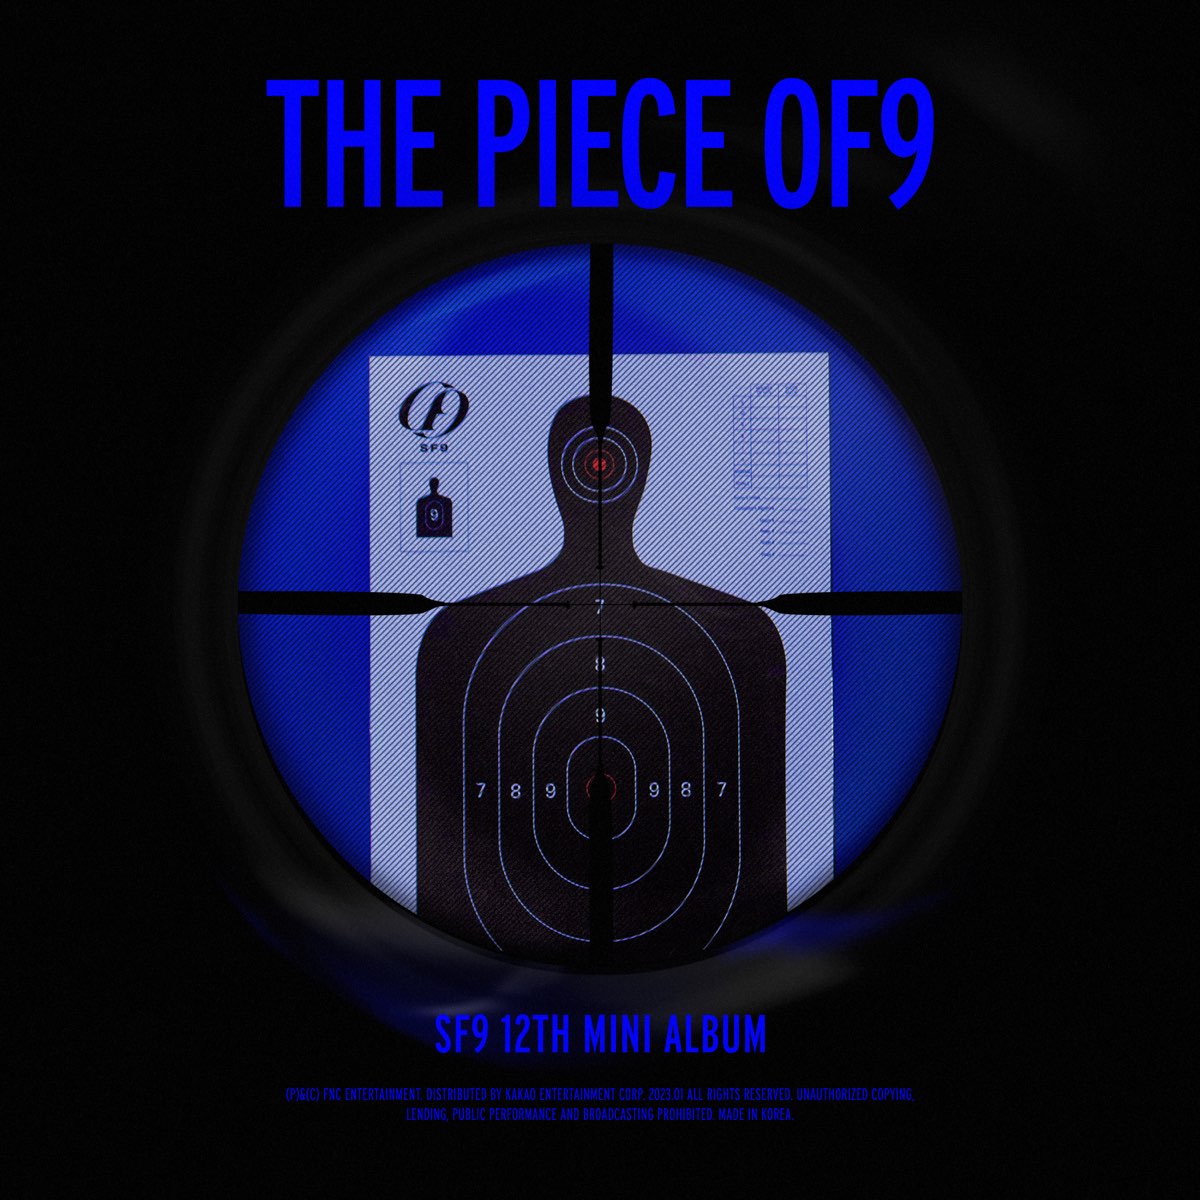 SF9 12thミニアルバムリリース、クールな色気を醸す新曲「Puzzle (パズル)」でカムバック